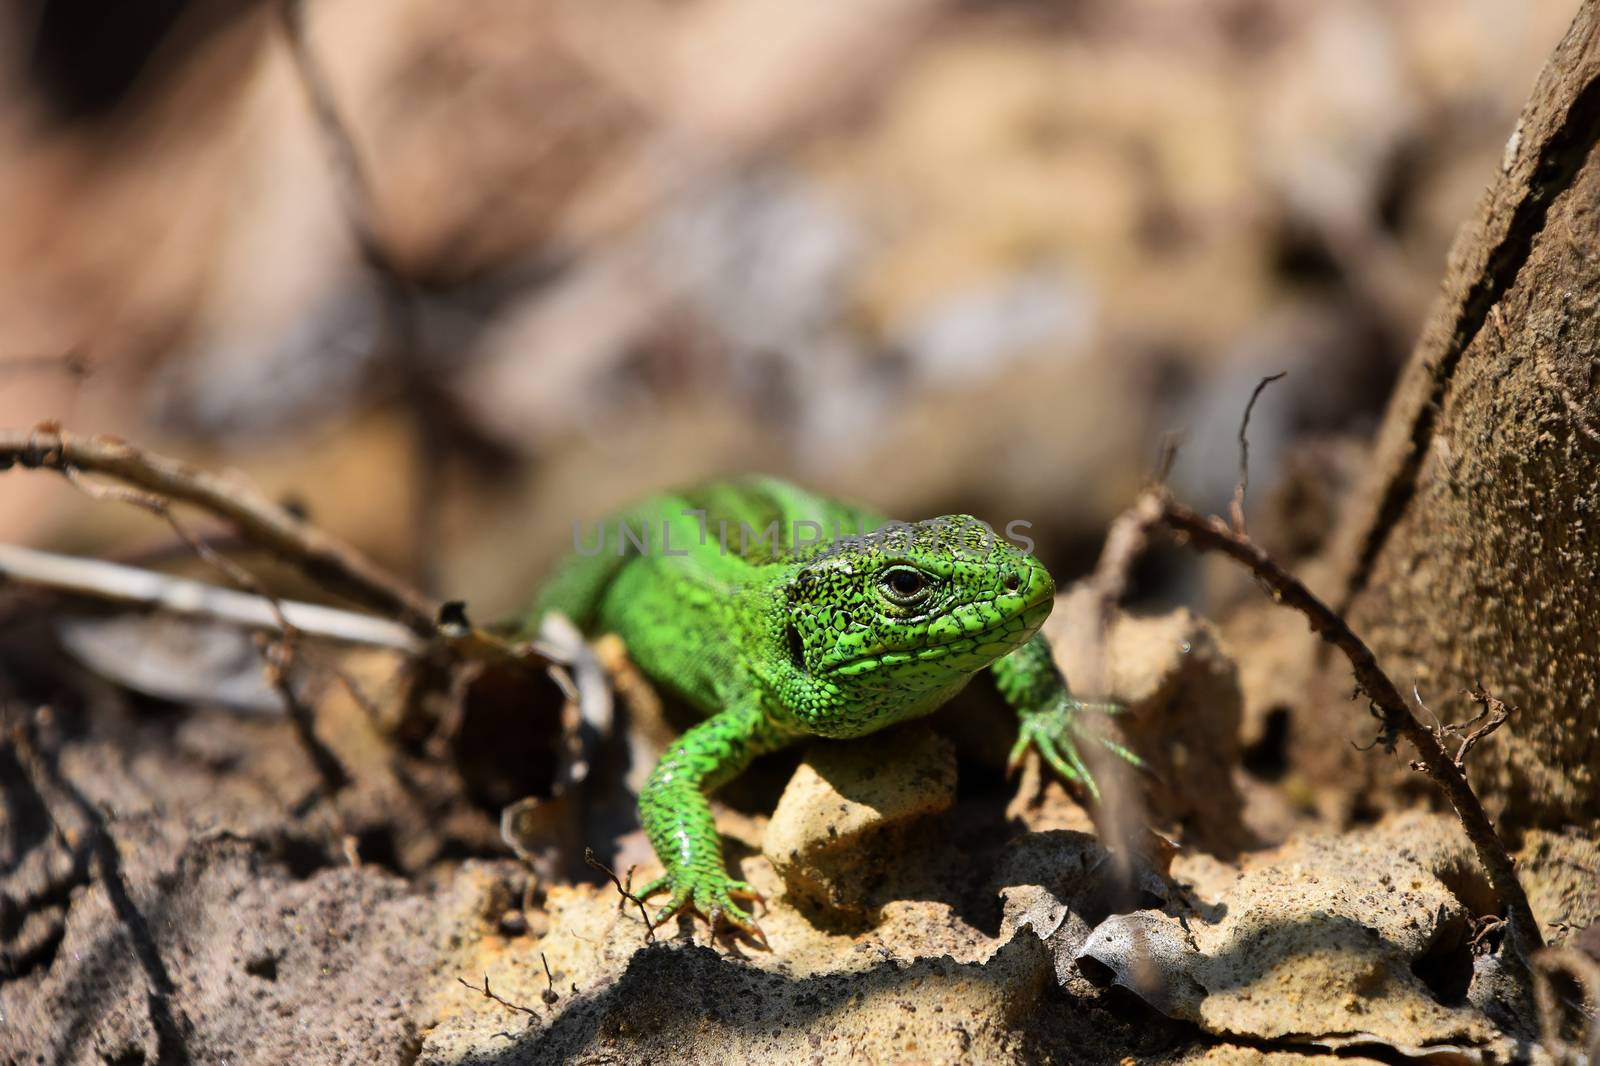 Green lizard stalking among stones, fallen leaves and twigs, fro by BreakingTheWalls